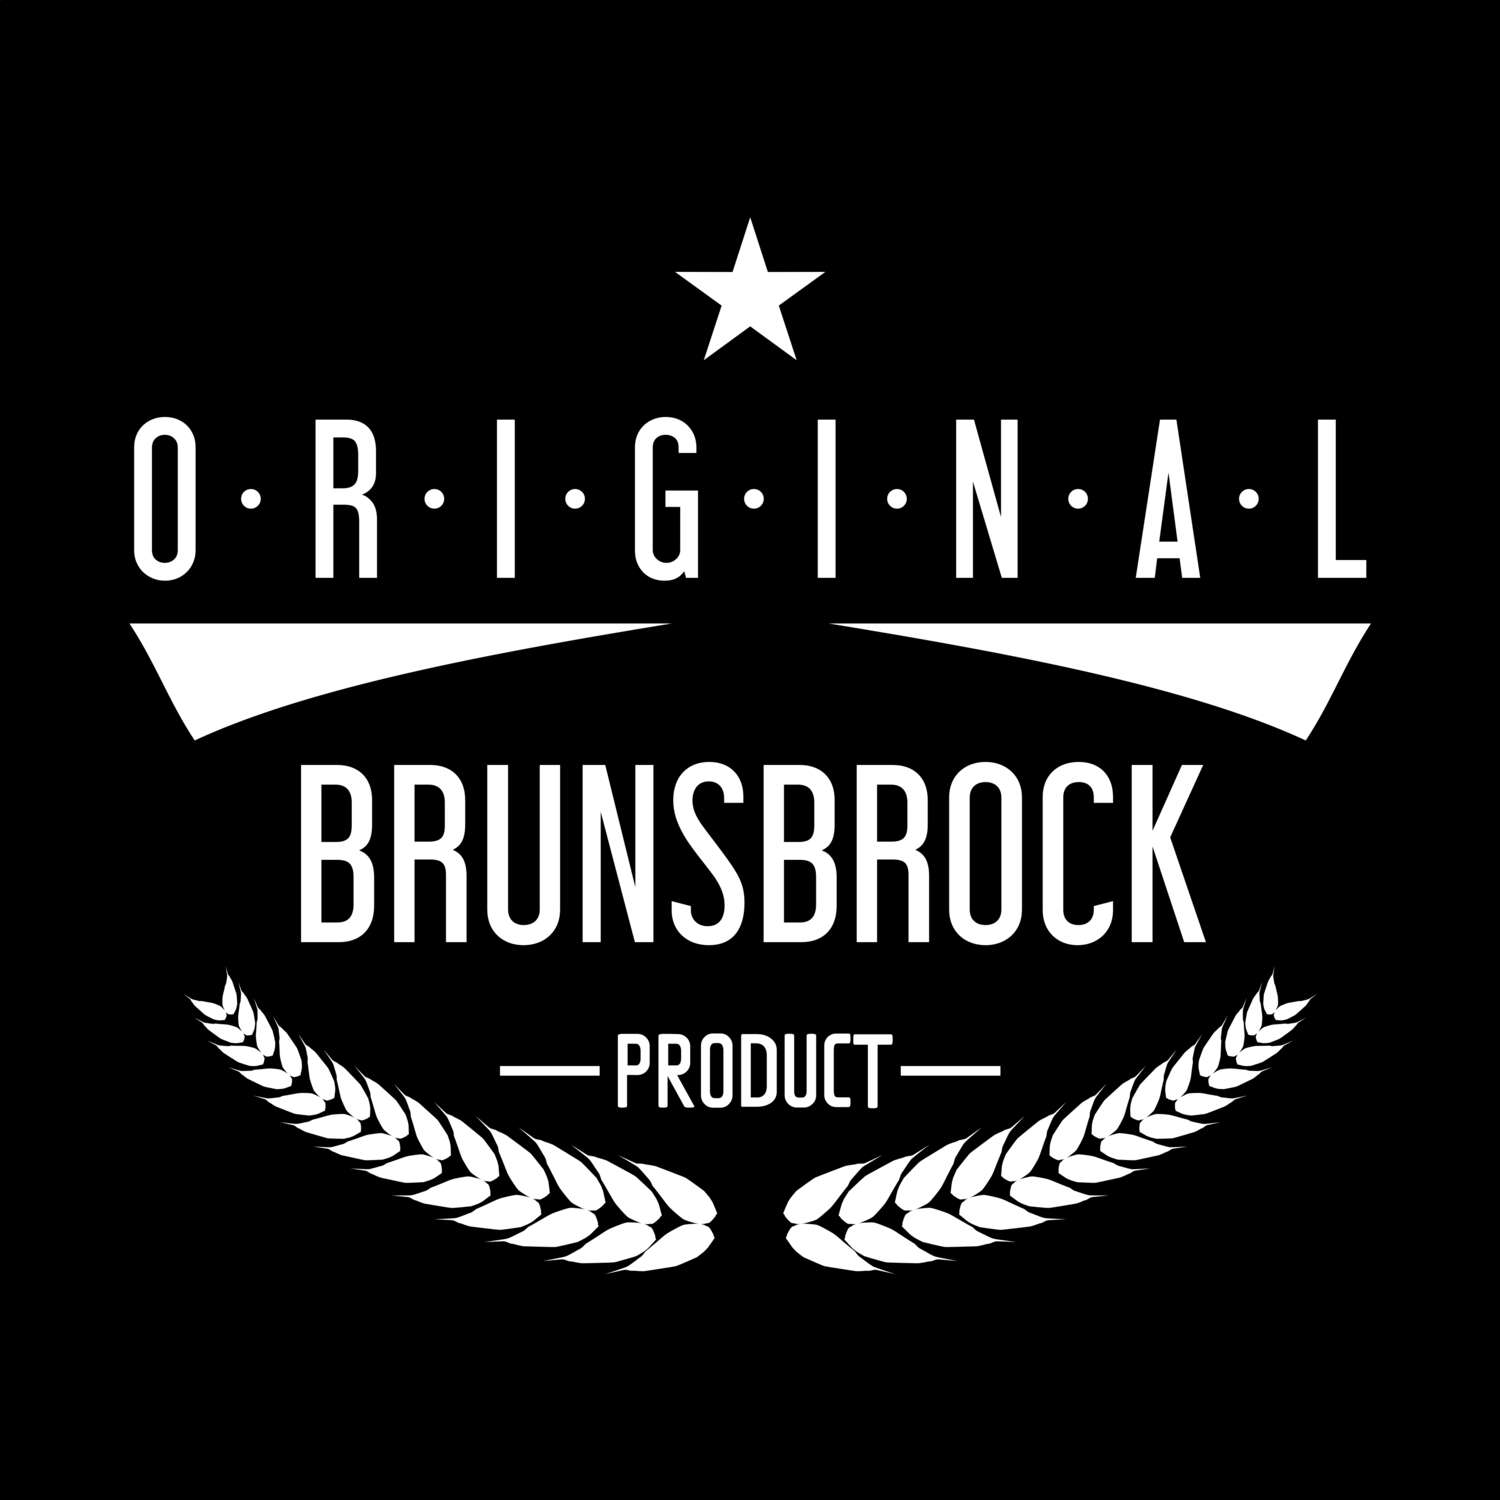 Brunsbrock T-Shirt »Original Product«